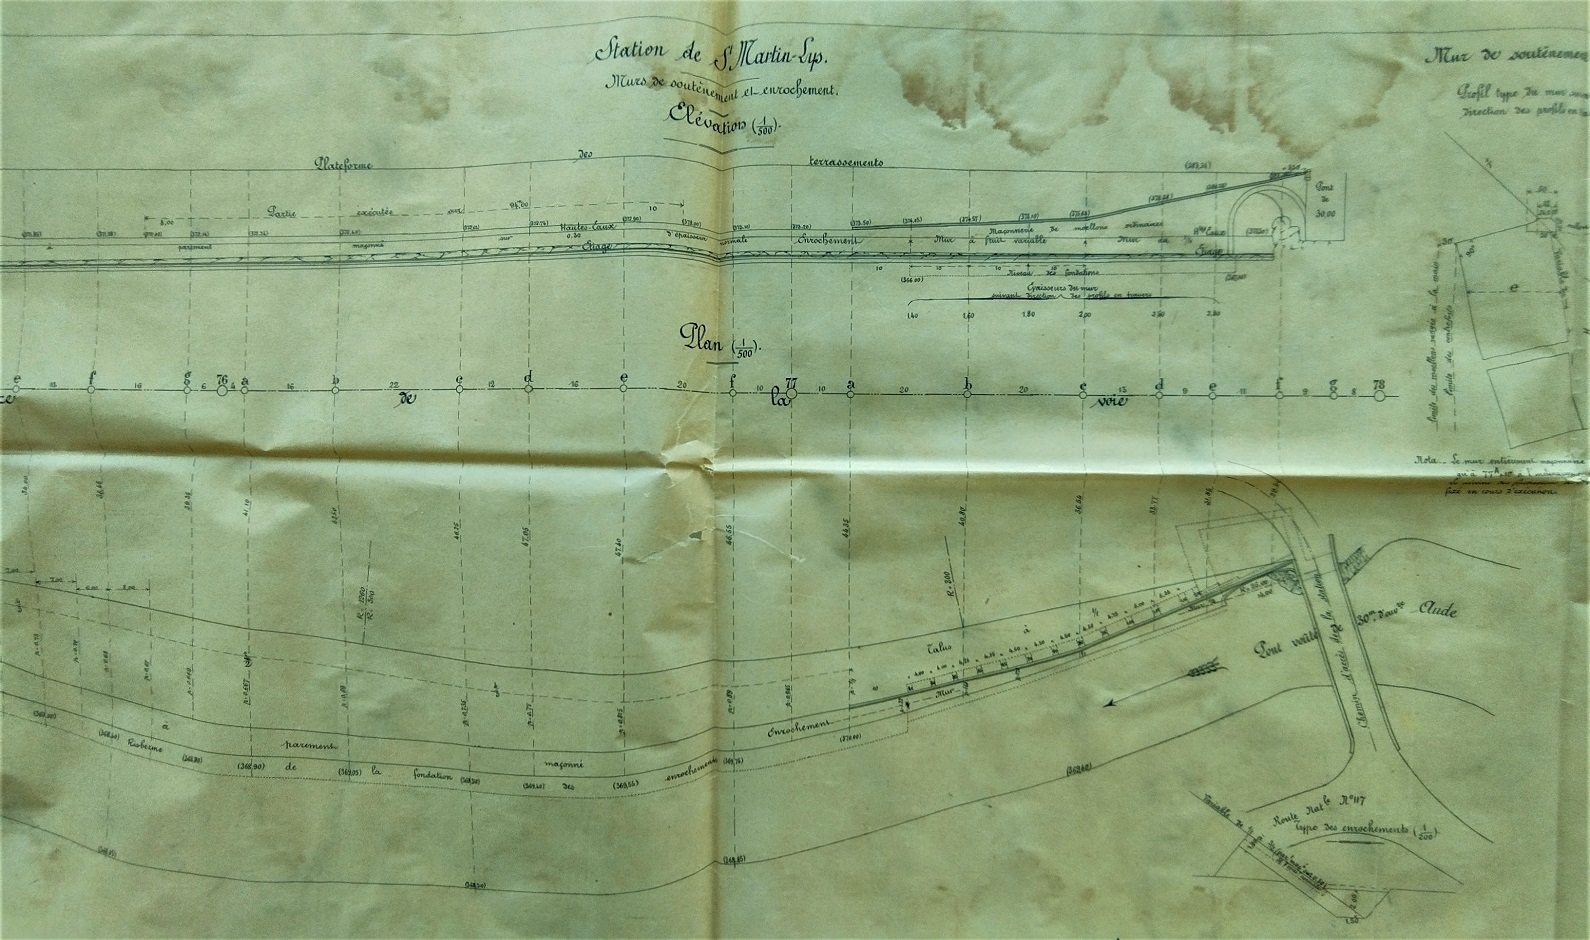 Plan sur la Station de Saint Martin Lys - mur soutainement et enrochement - 2